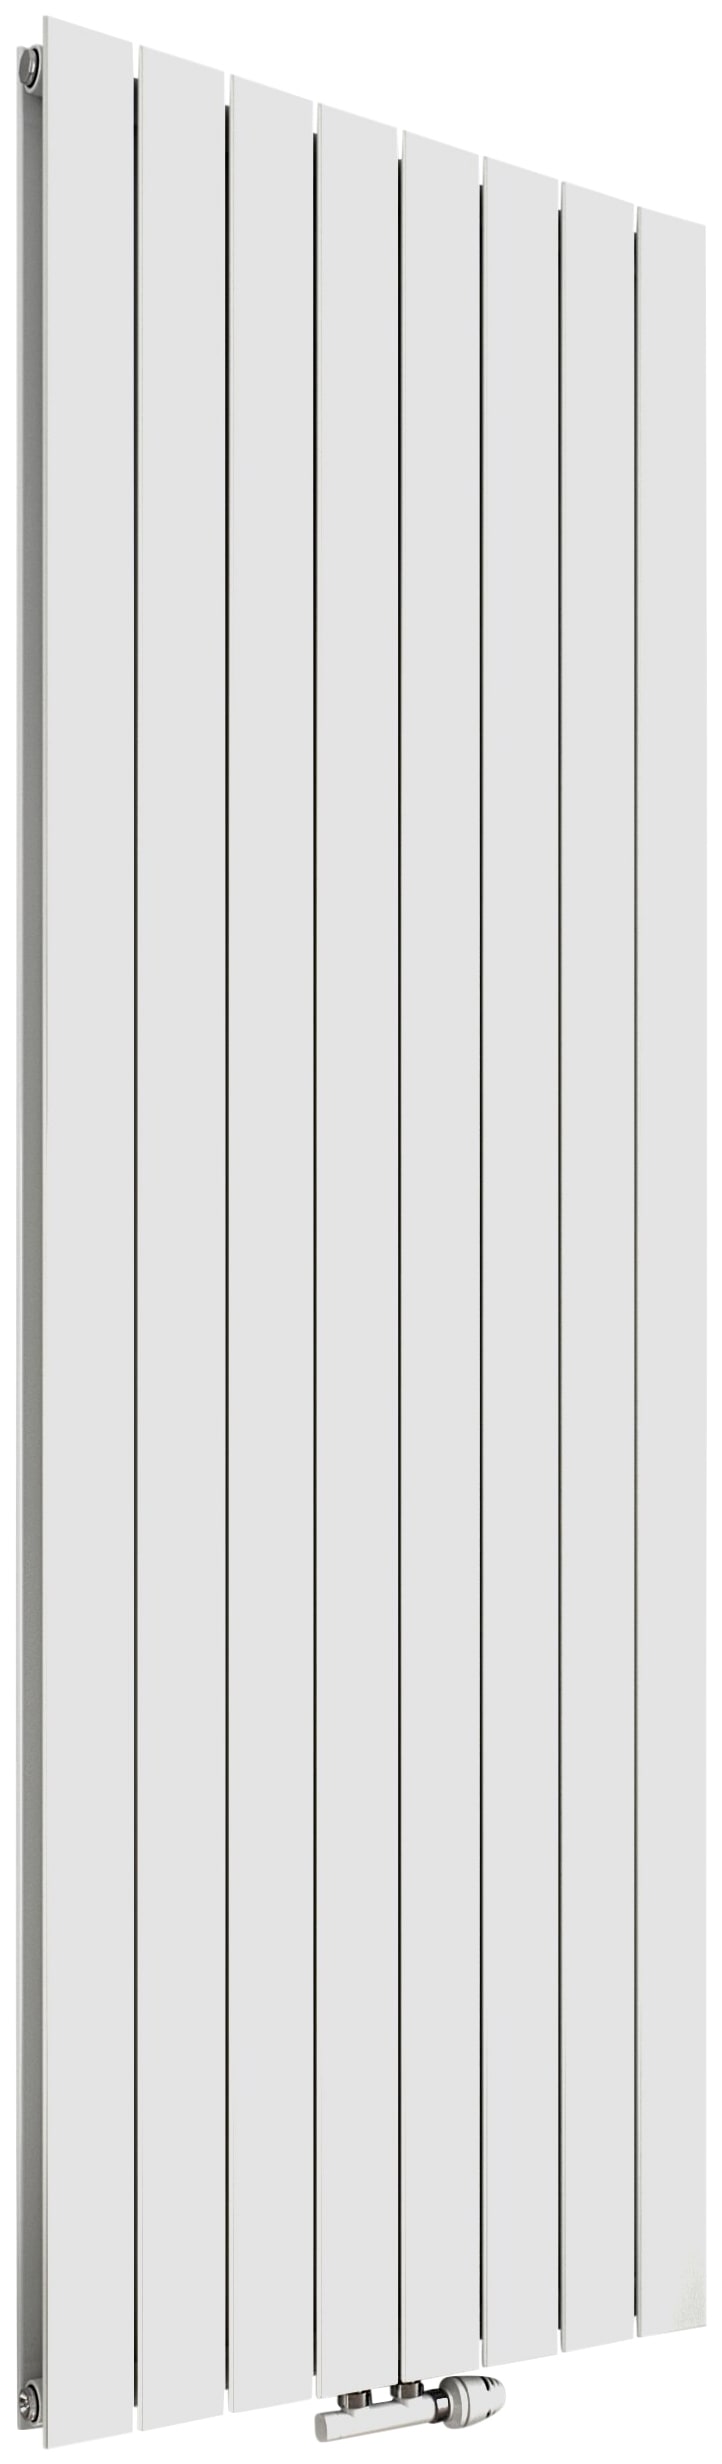 Paneelheizkörper »P1 Duplex 1800 mm x 670 mm«, 1773 Watt, Mittenanschluss, weiß